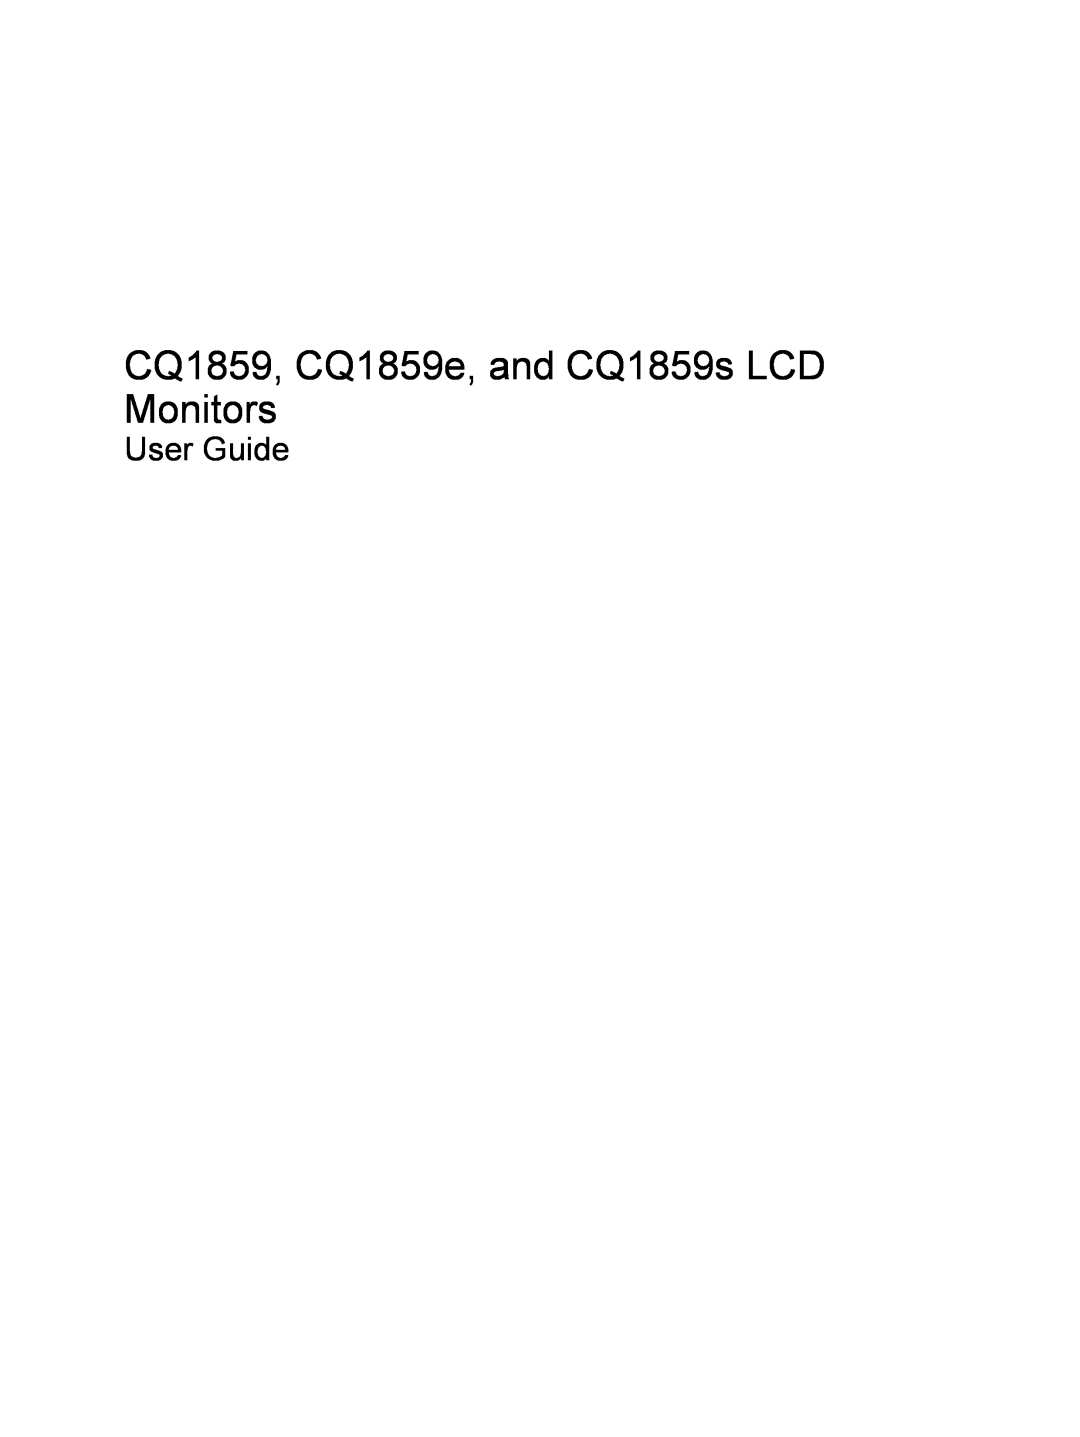 HP CQ1859E manual CQ1859, CQ1859e, and CQ1859s LCD Monitors, User Guide 